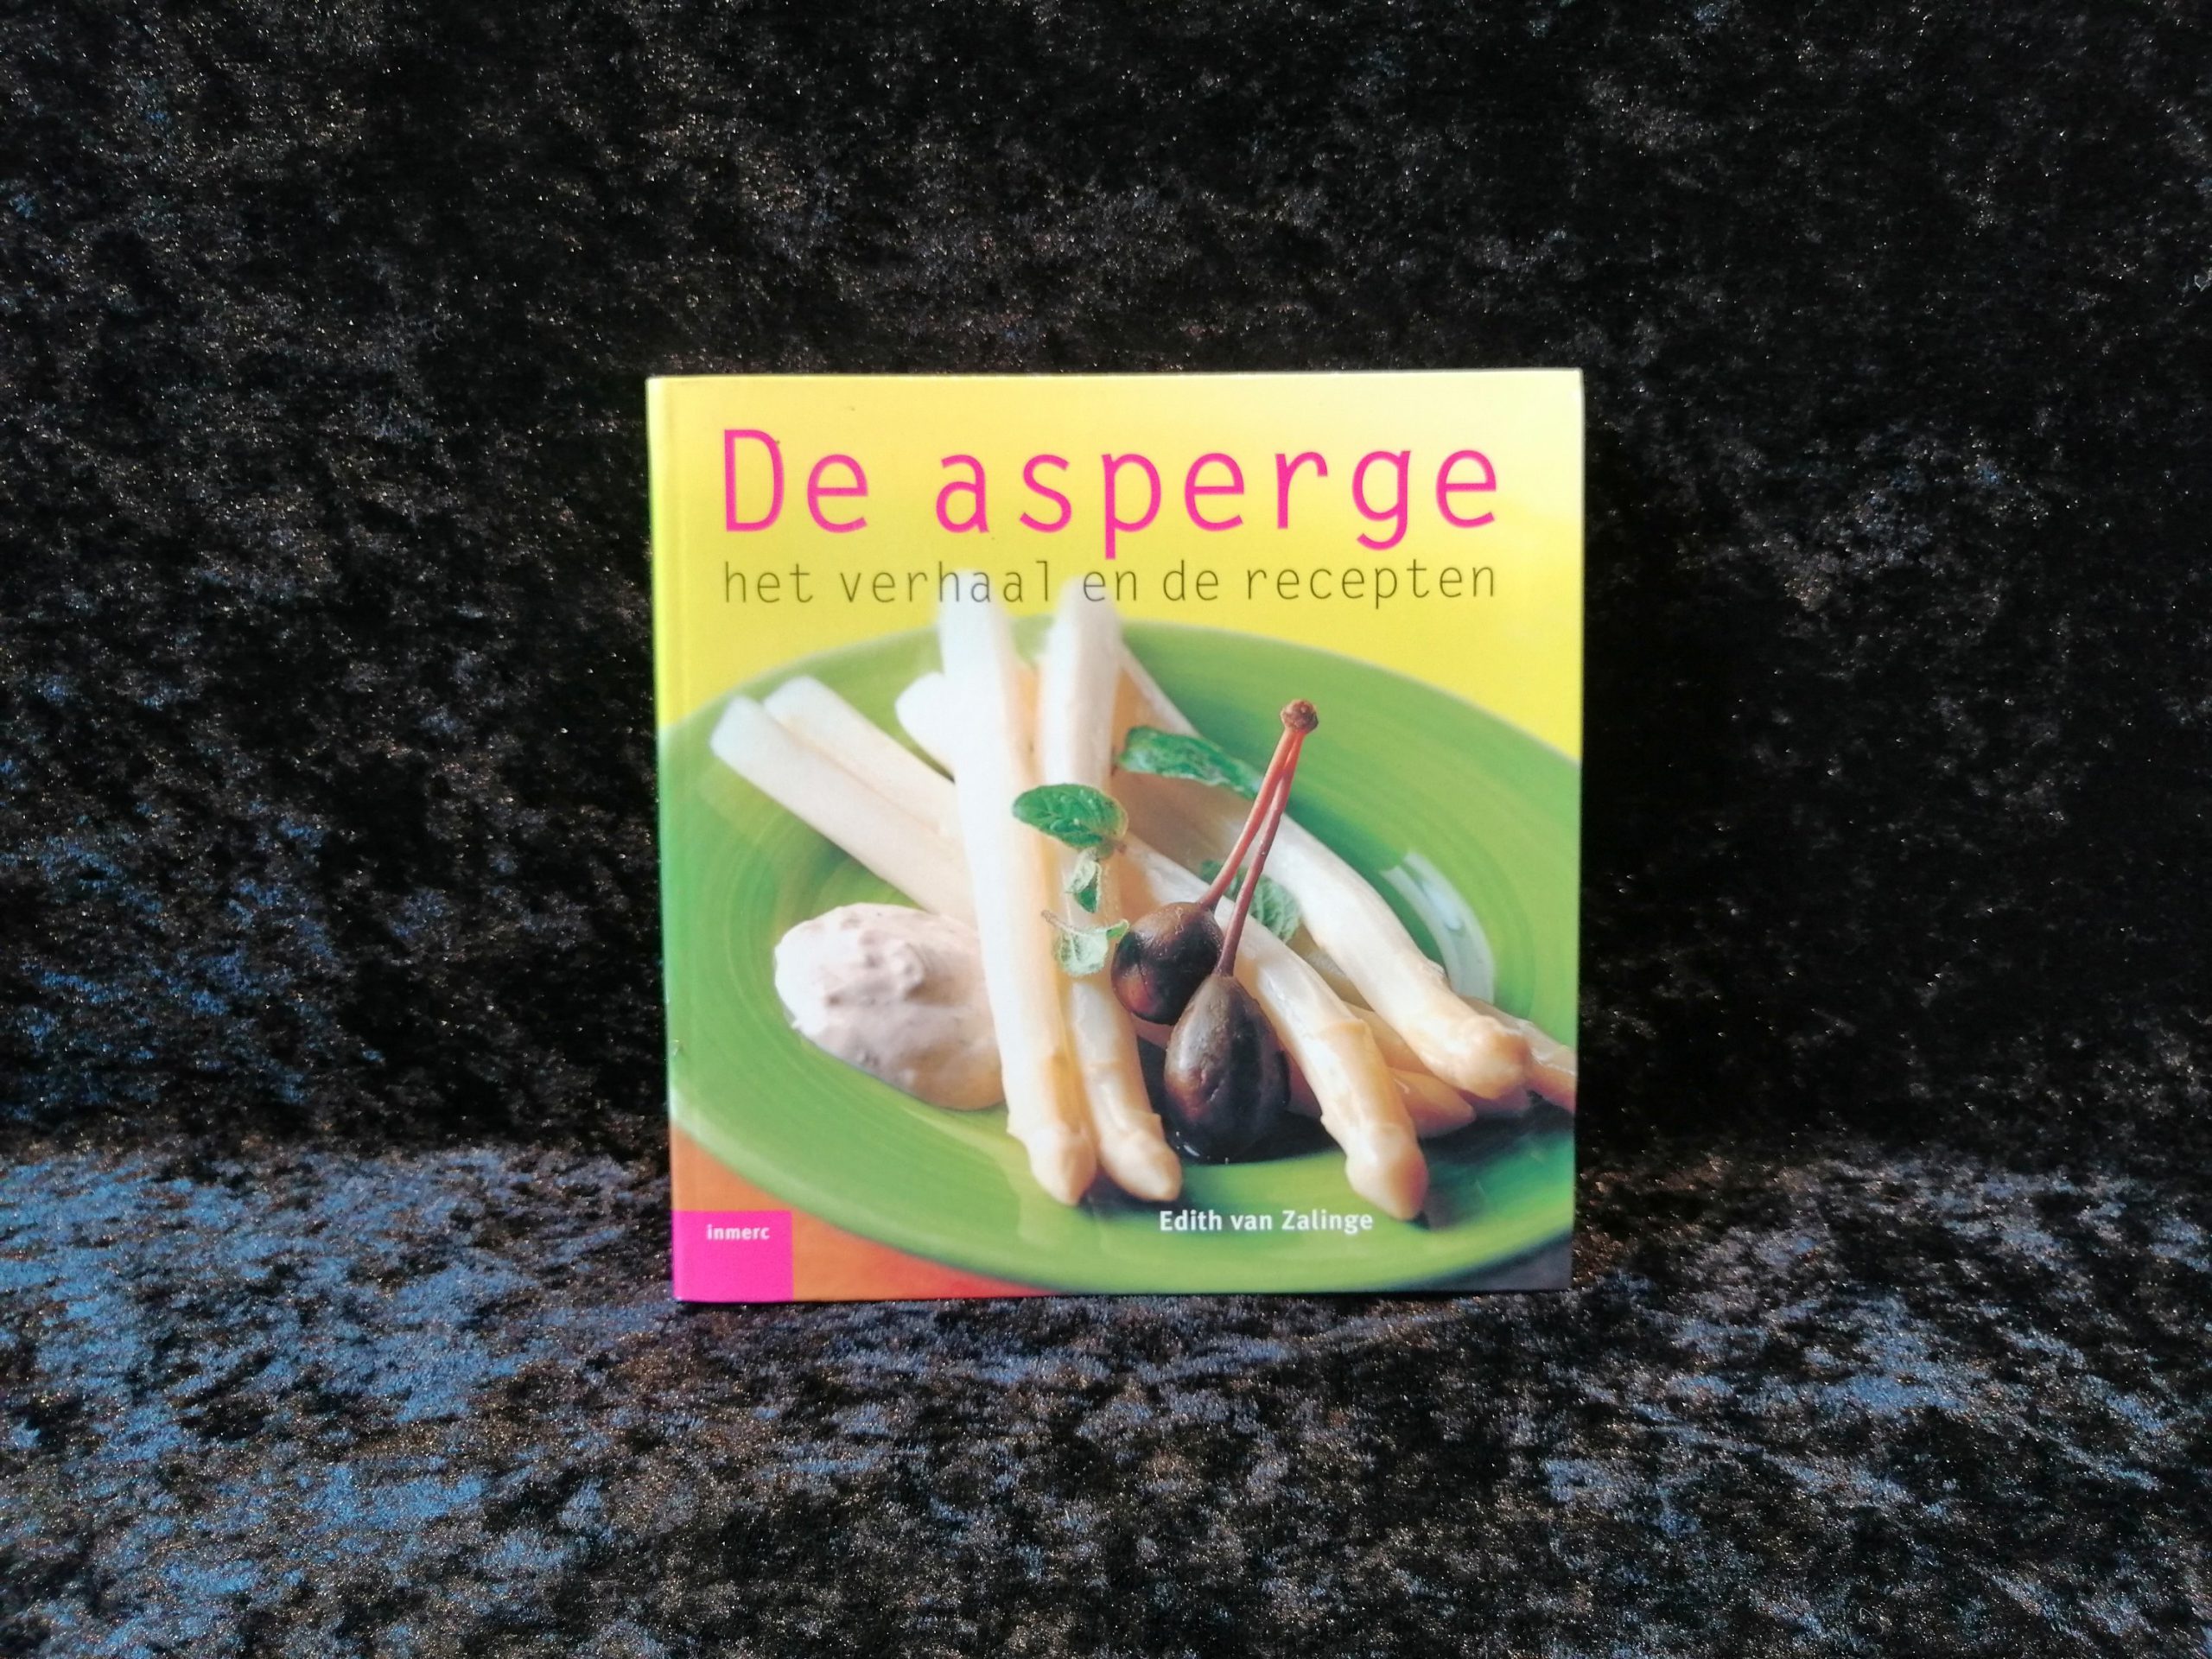 De asperge: het verhaal en de recepten